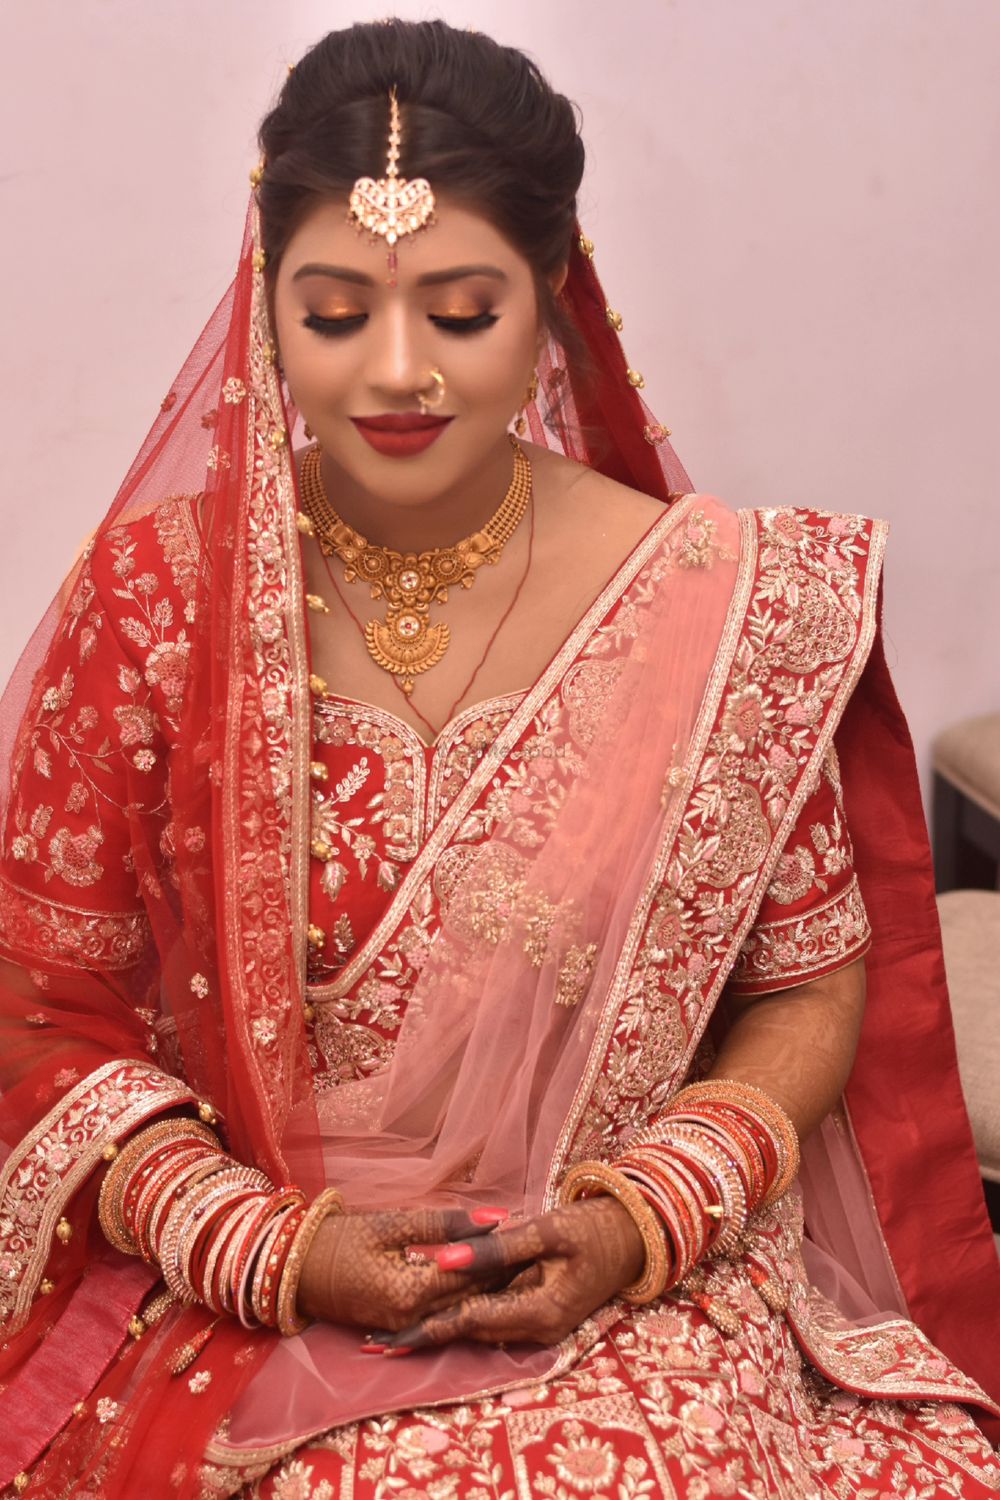 Photo From Marwari Brides - By Namrata's Studio